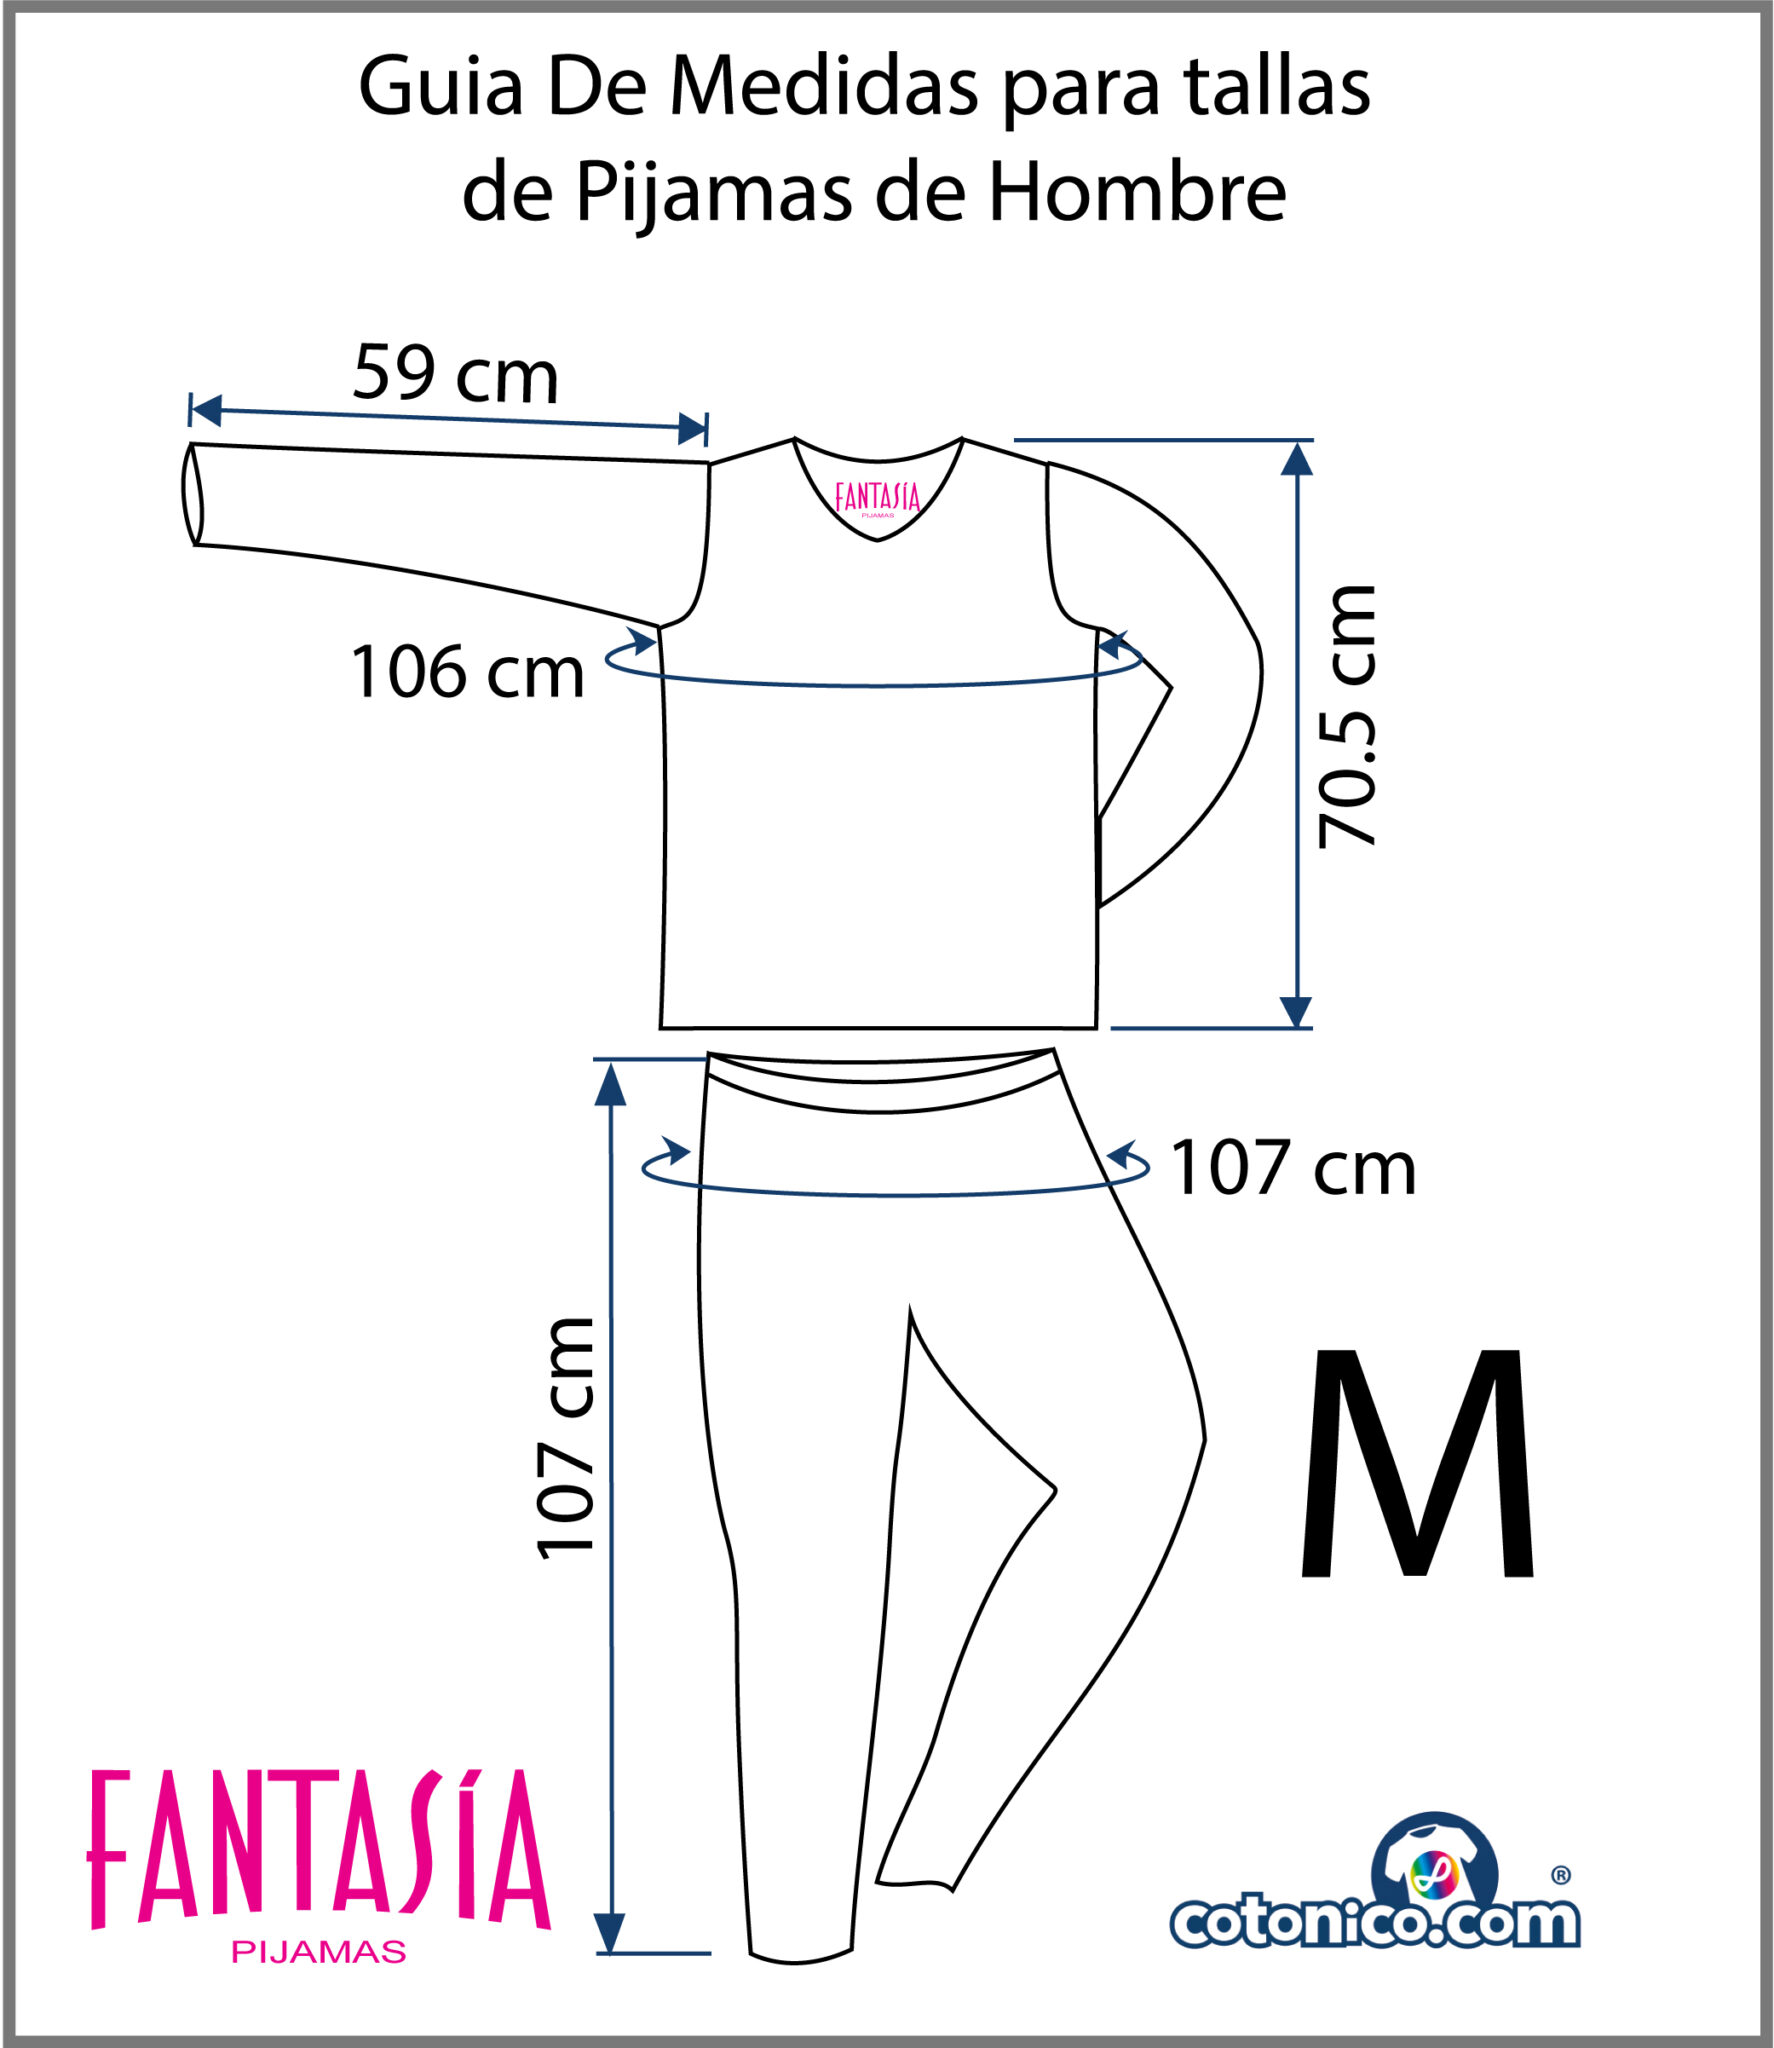 Guia-De-Tallas-Pijamas-De-Hombre-M